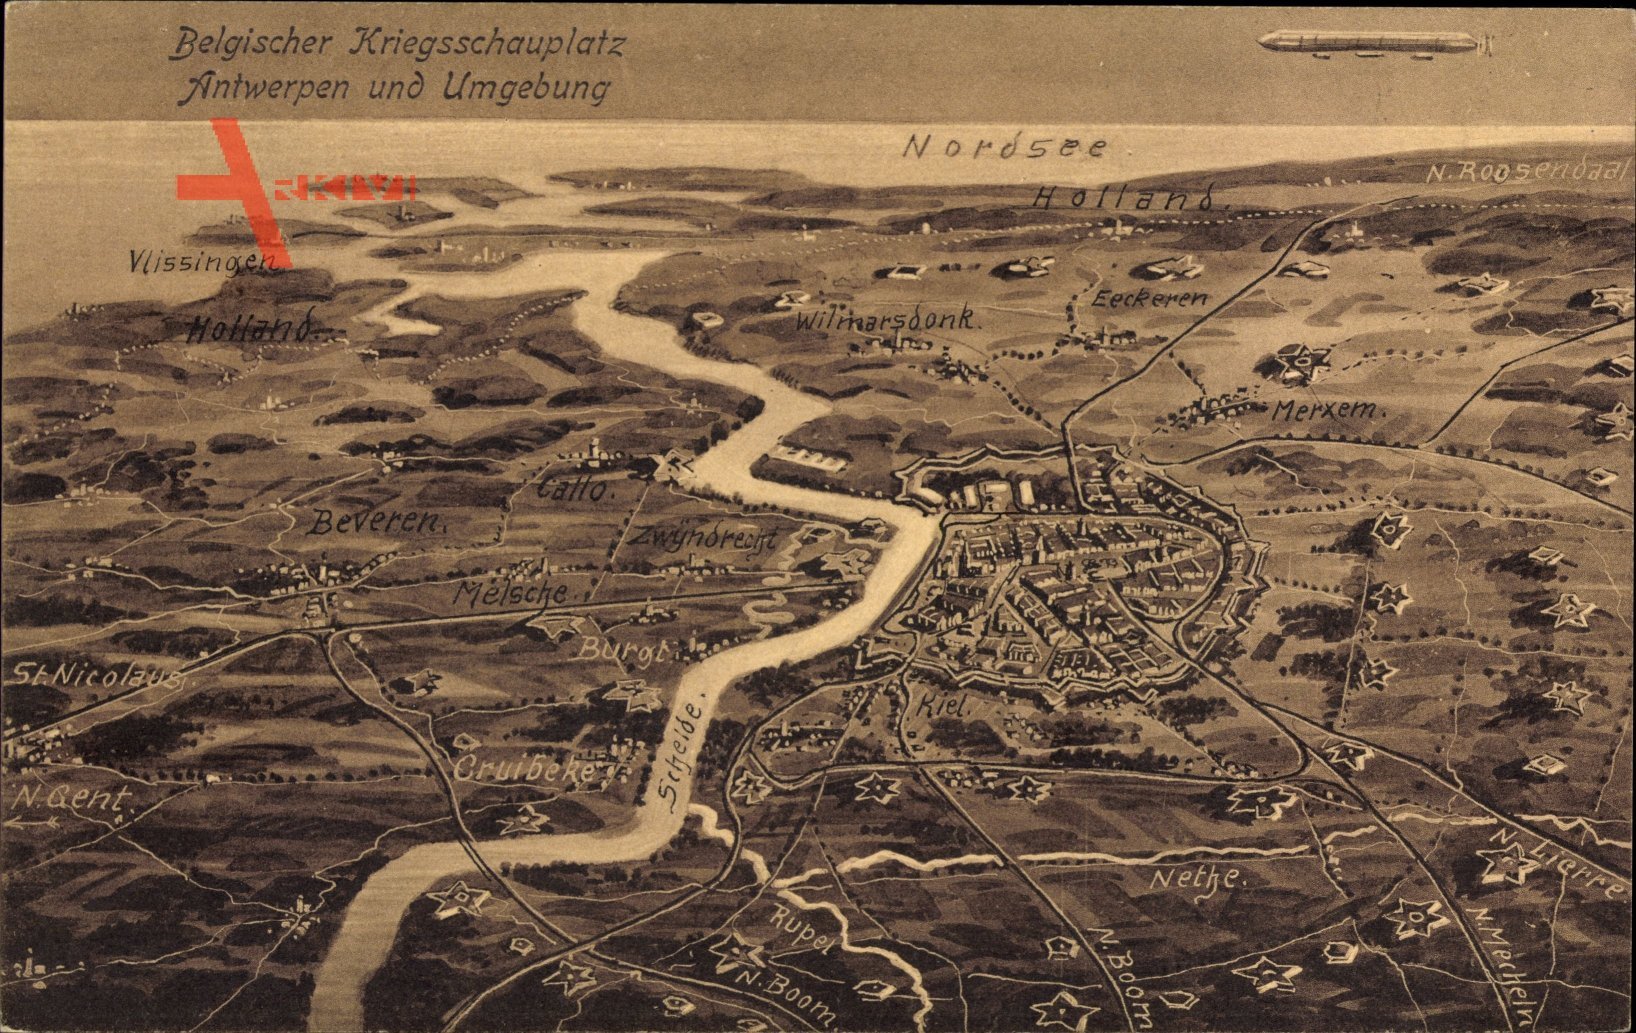 Landkarten Belgischer Kriegsschauplatz, Antwerpen und Umgebung, Zeppelin